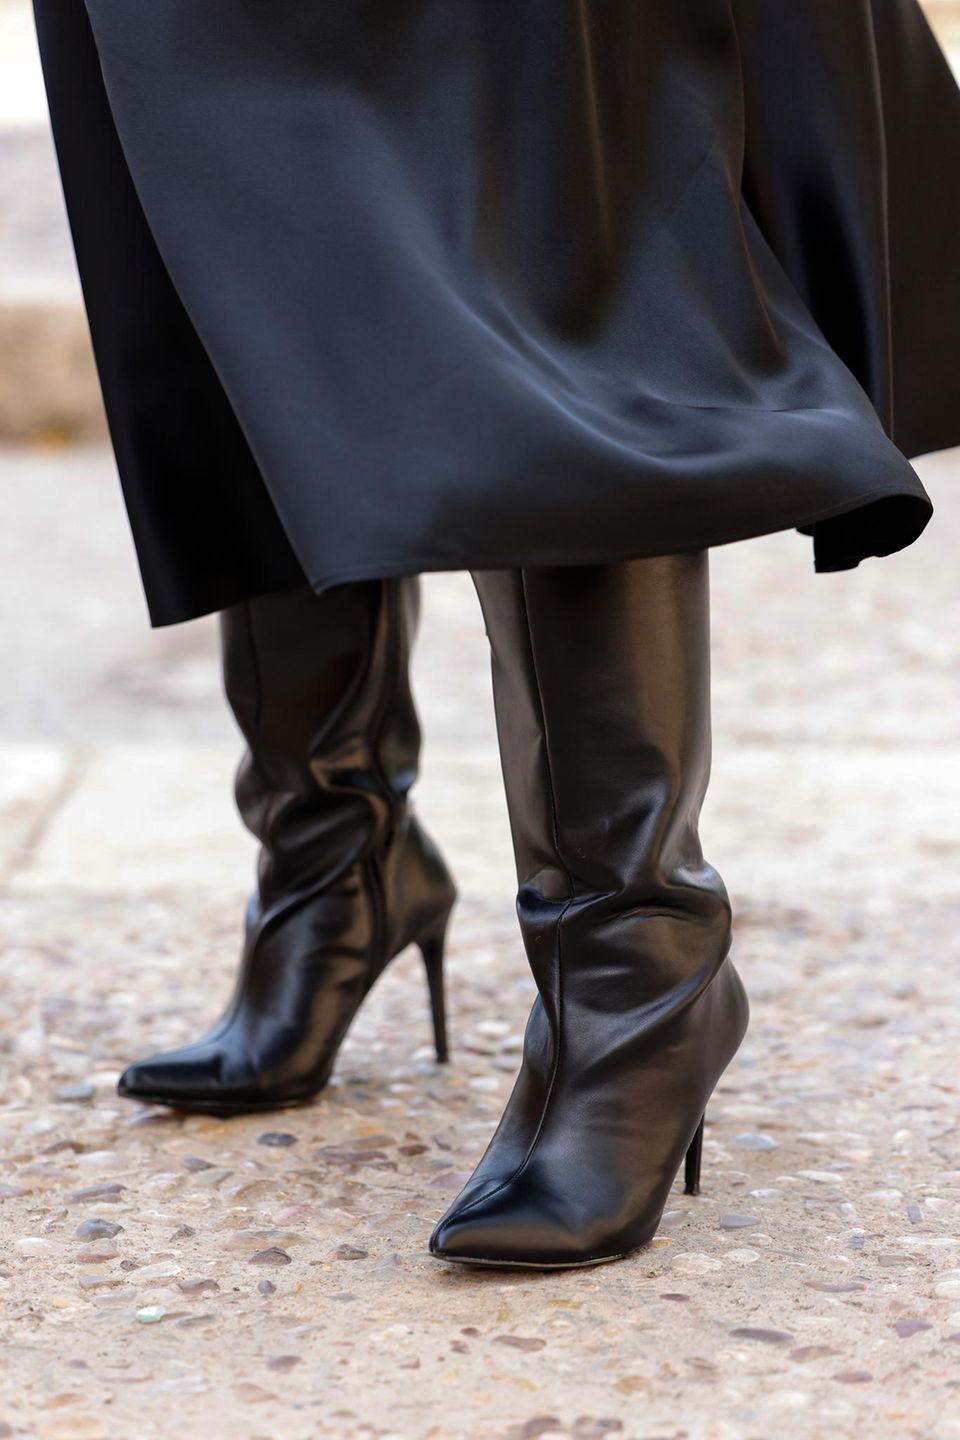 Eine Frau trägt schwarze Overknee-Stiefel und einen schwarzen Rock